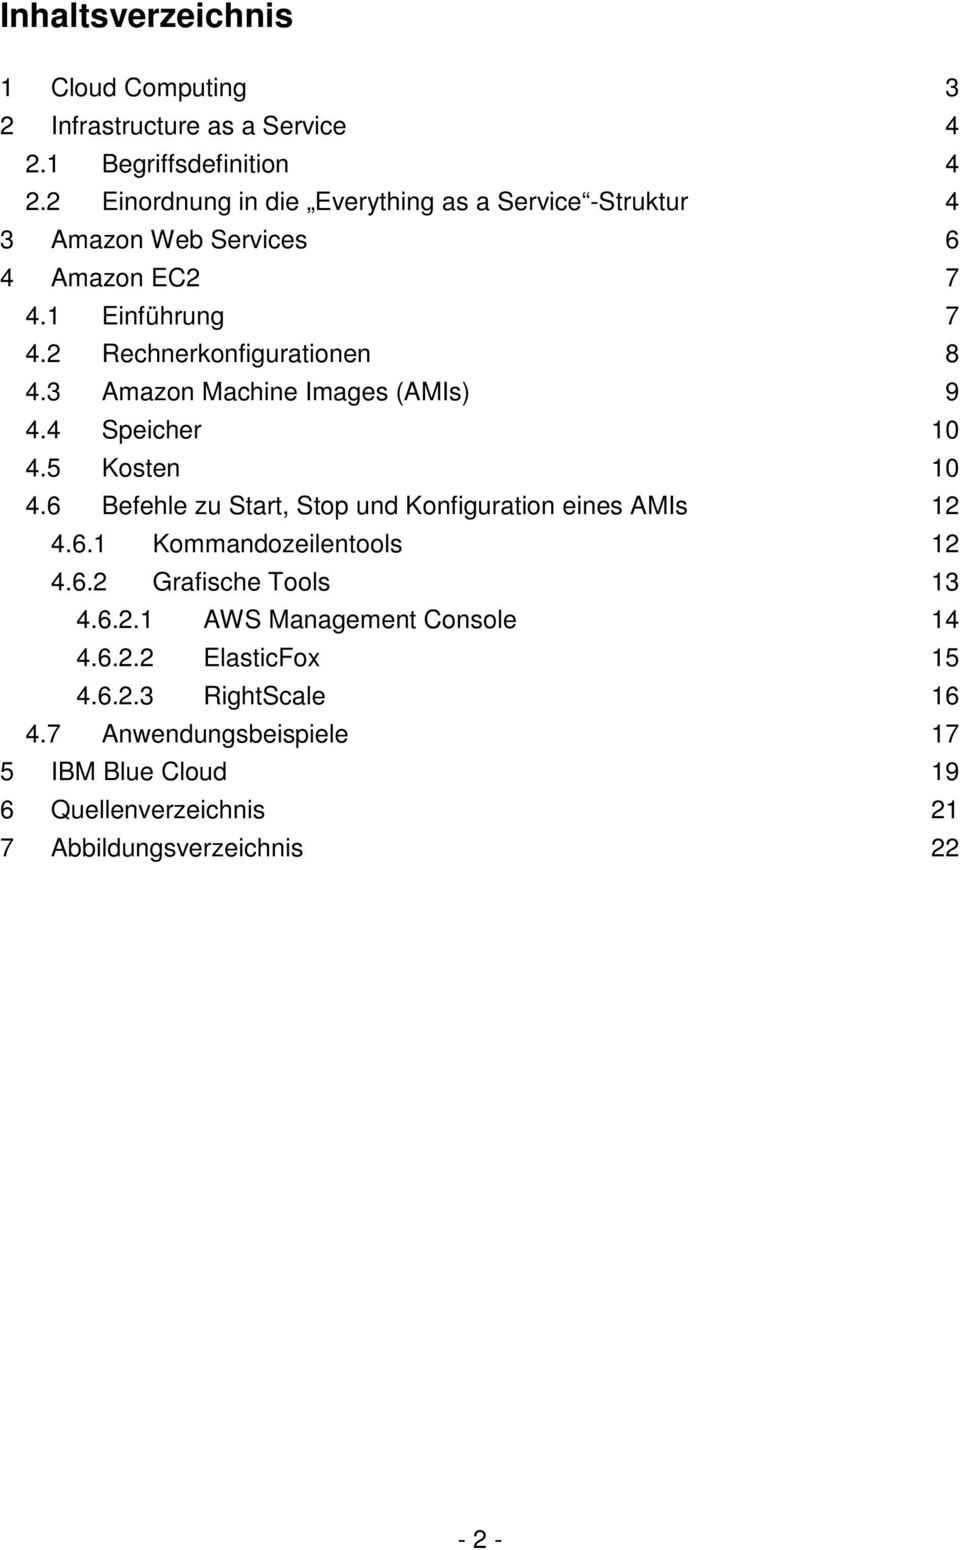 3 Amazon Machine Images (AMIs) 9 4.4 Speicher 10 4.5 Kosten 10 4.6 Befehle zu Start, Stop und Konfiguration eines AMIs 12 4.6.1 Kommandozeilentools 12 4.